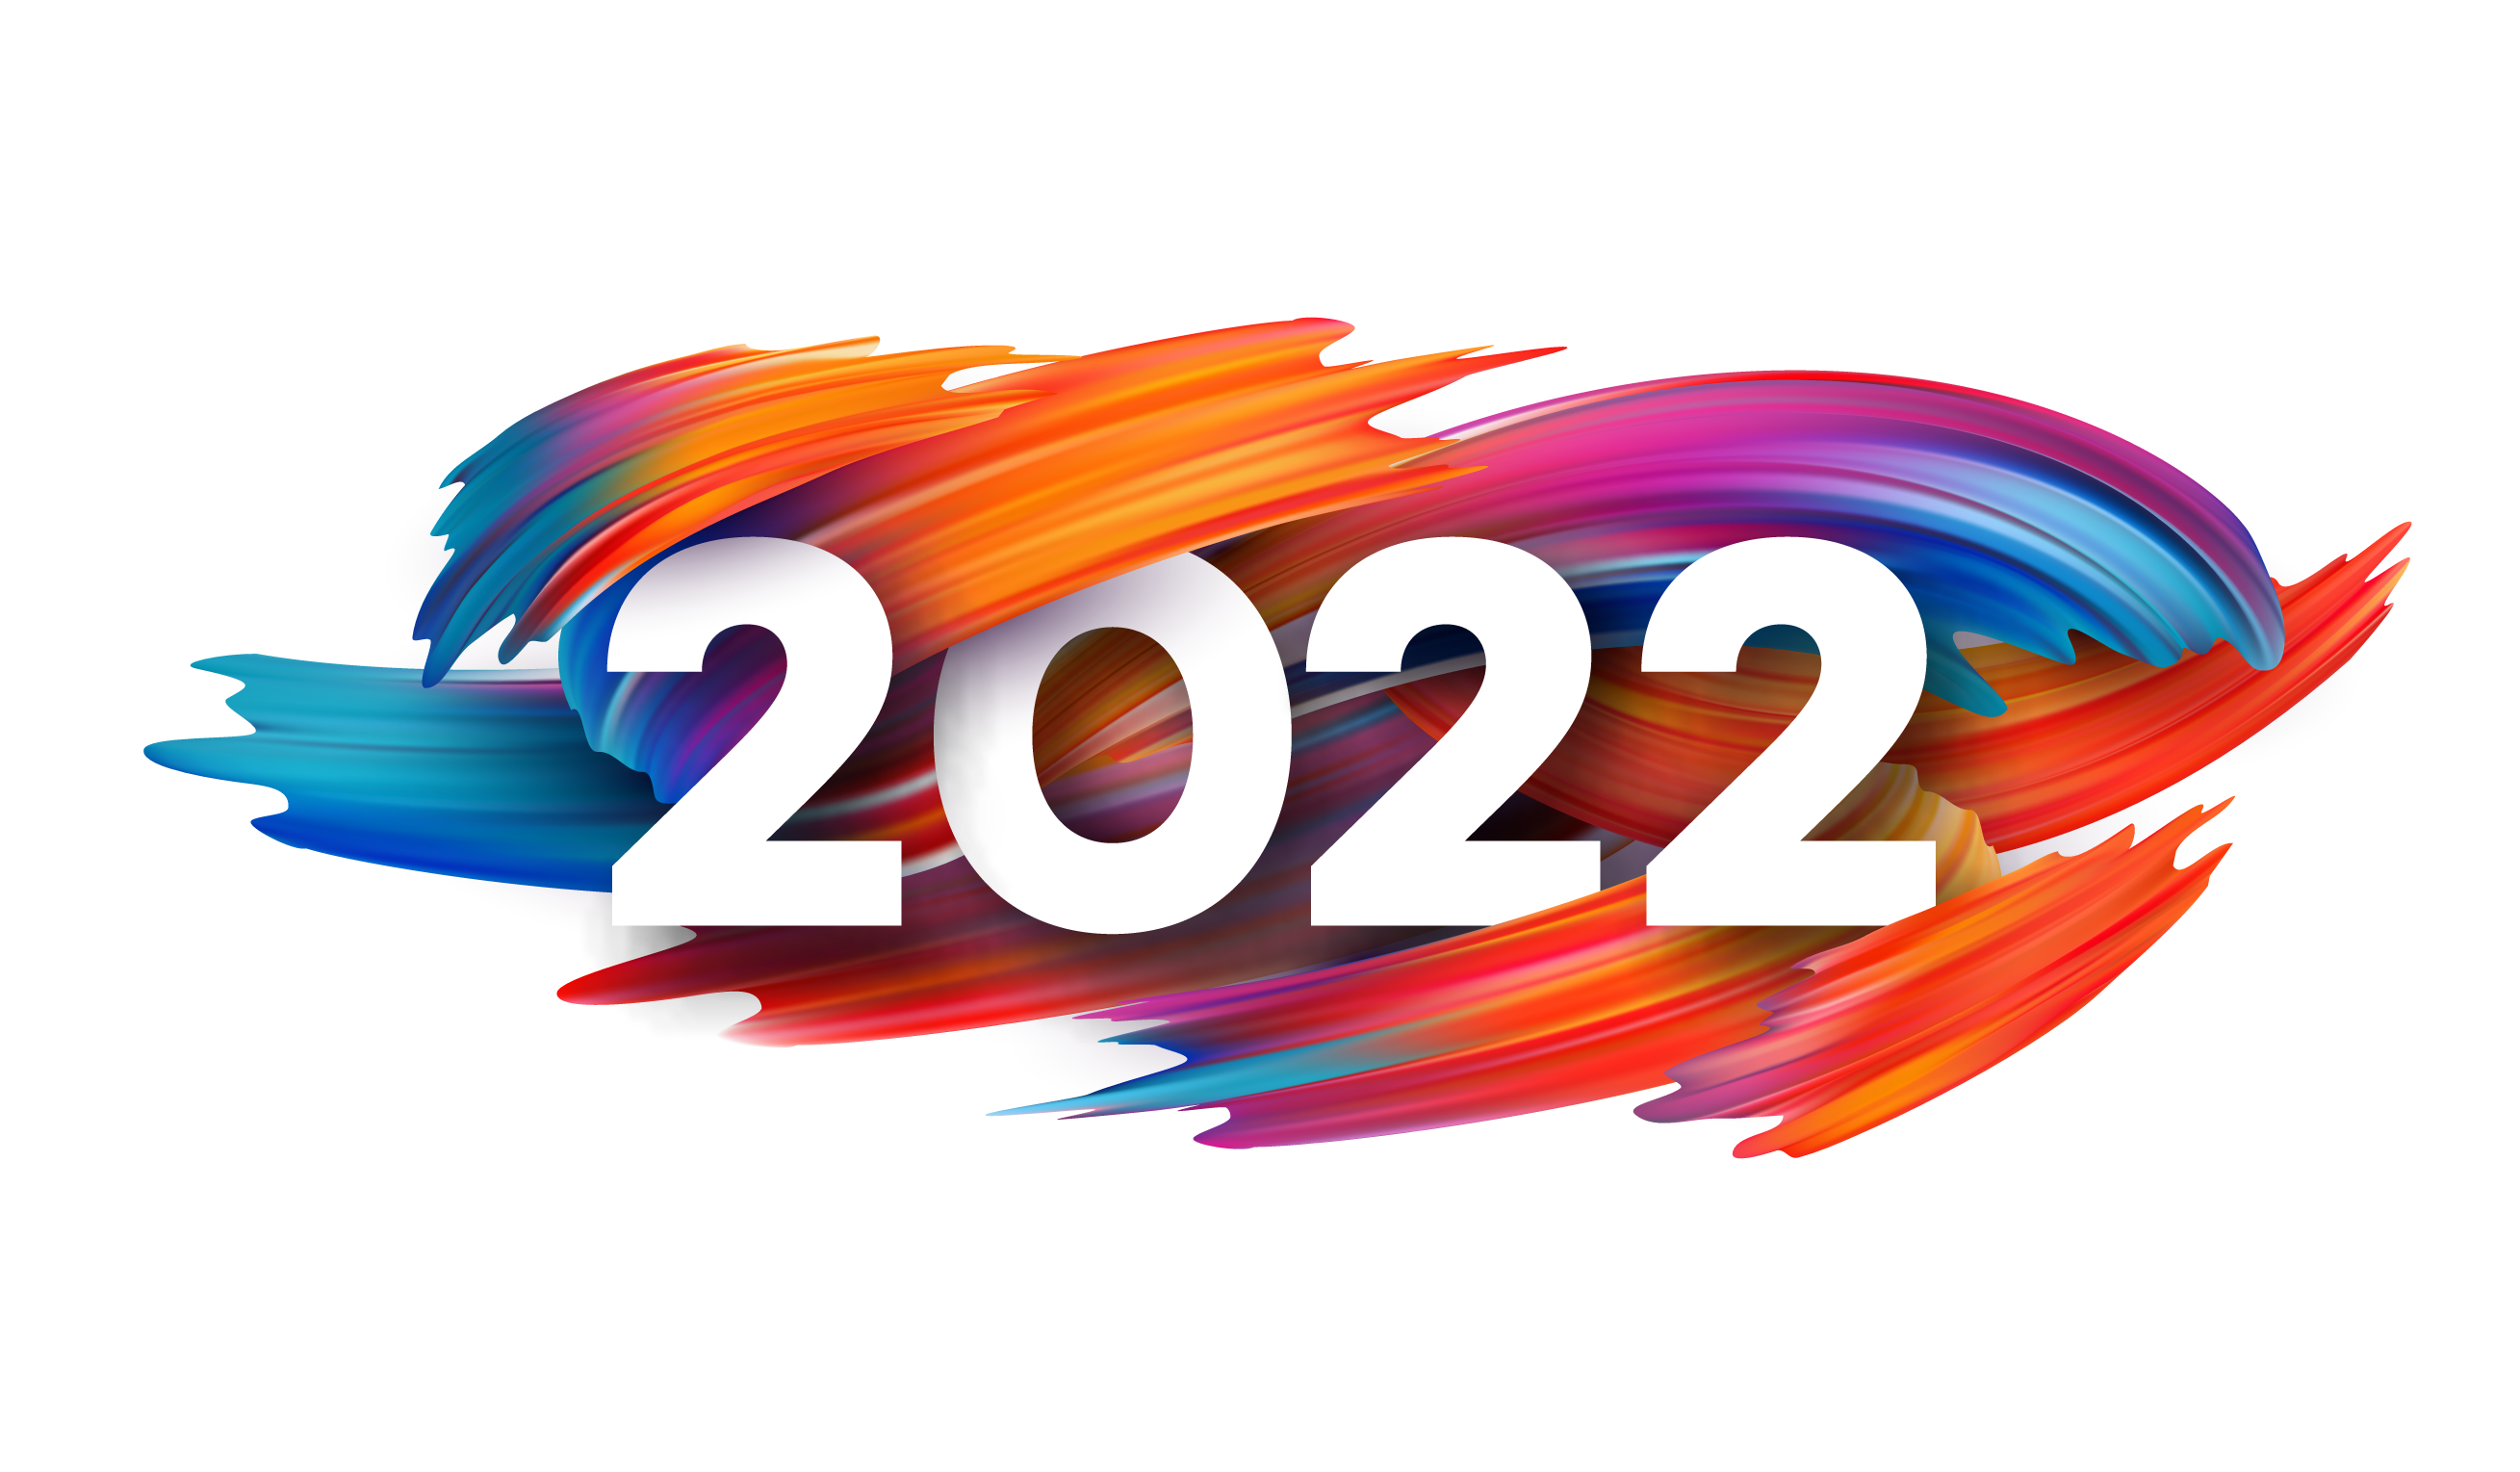 2022 Надпись. 2022 Картинка. 2022 Год. 2022 Год надпись. 19 апреля 2020 год